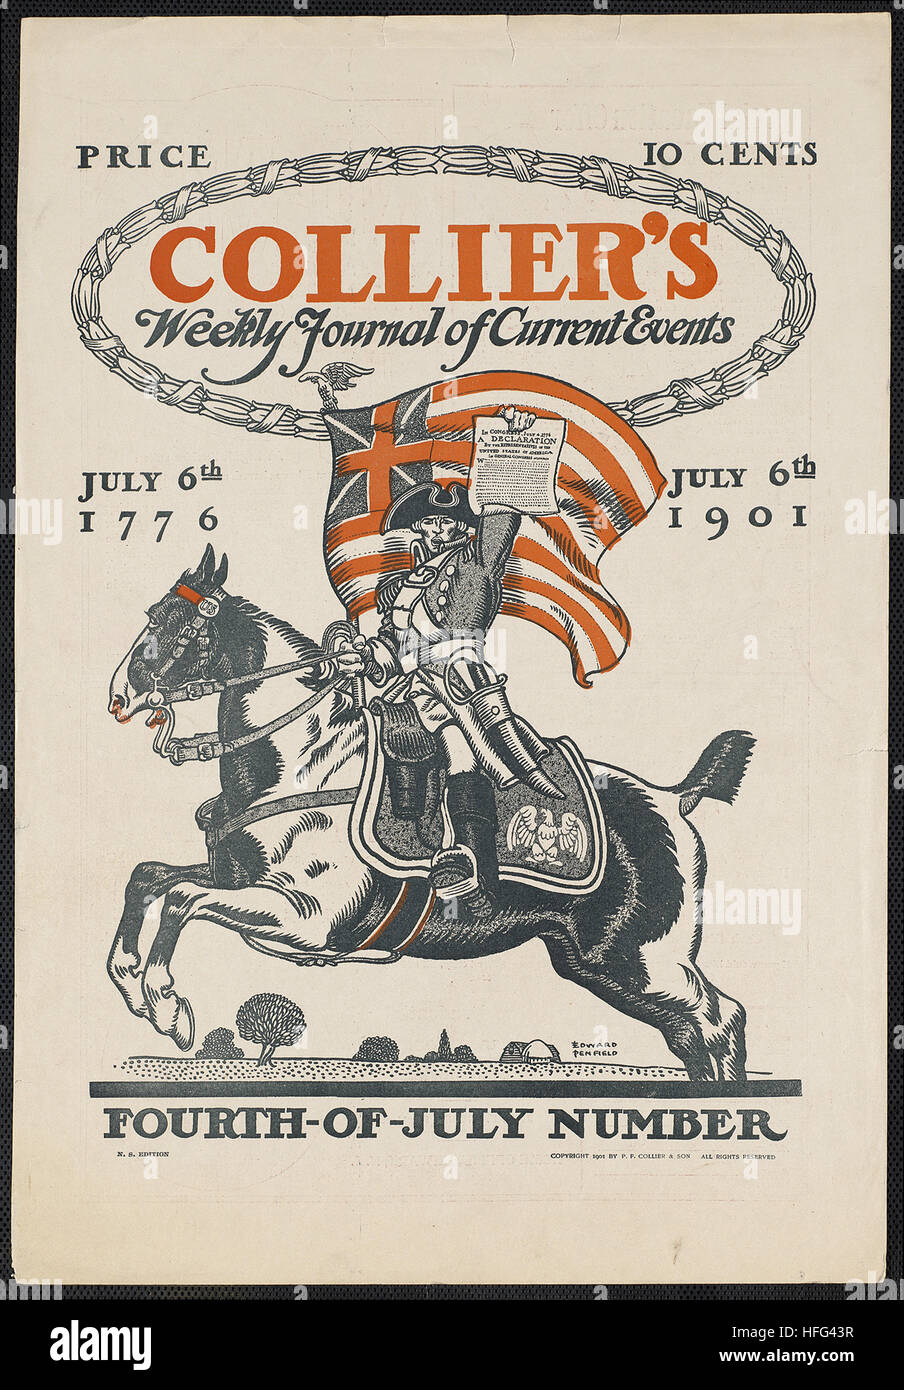 Collier's Weekly Journal de eventos actuales, cuarto número de julio. El 06 de julio de 1776, del 6 de julio de 1901. Foto de stock